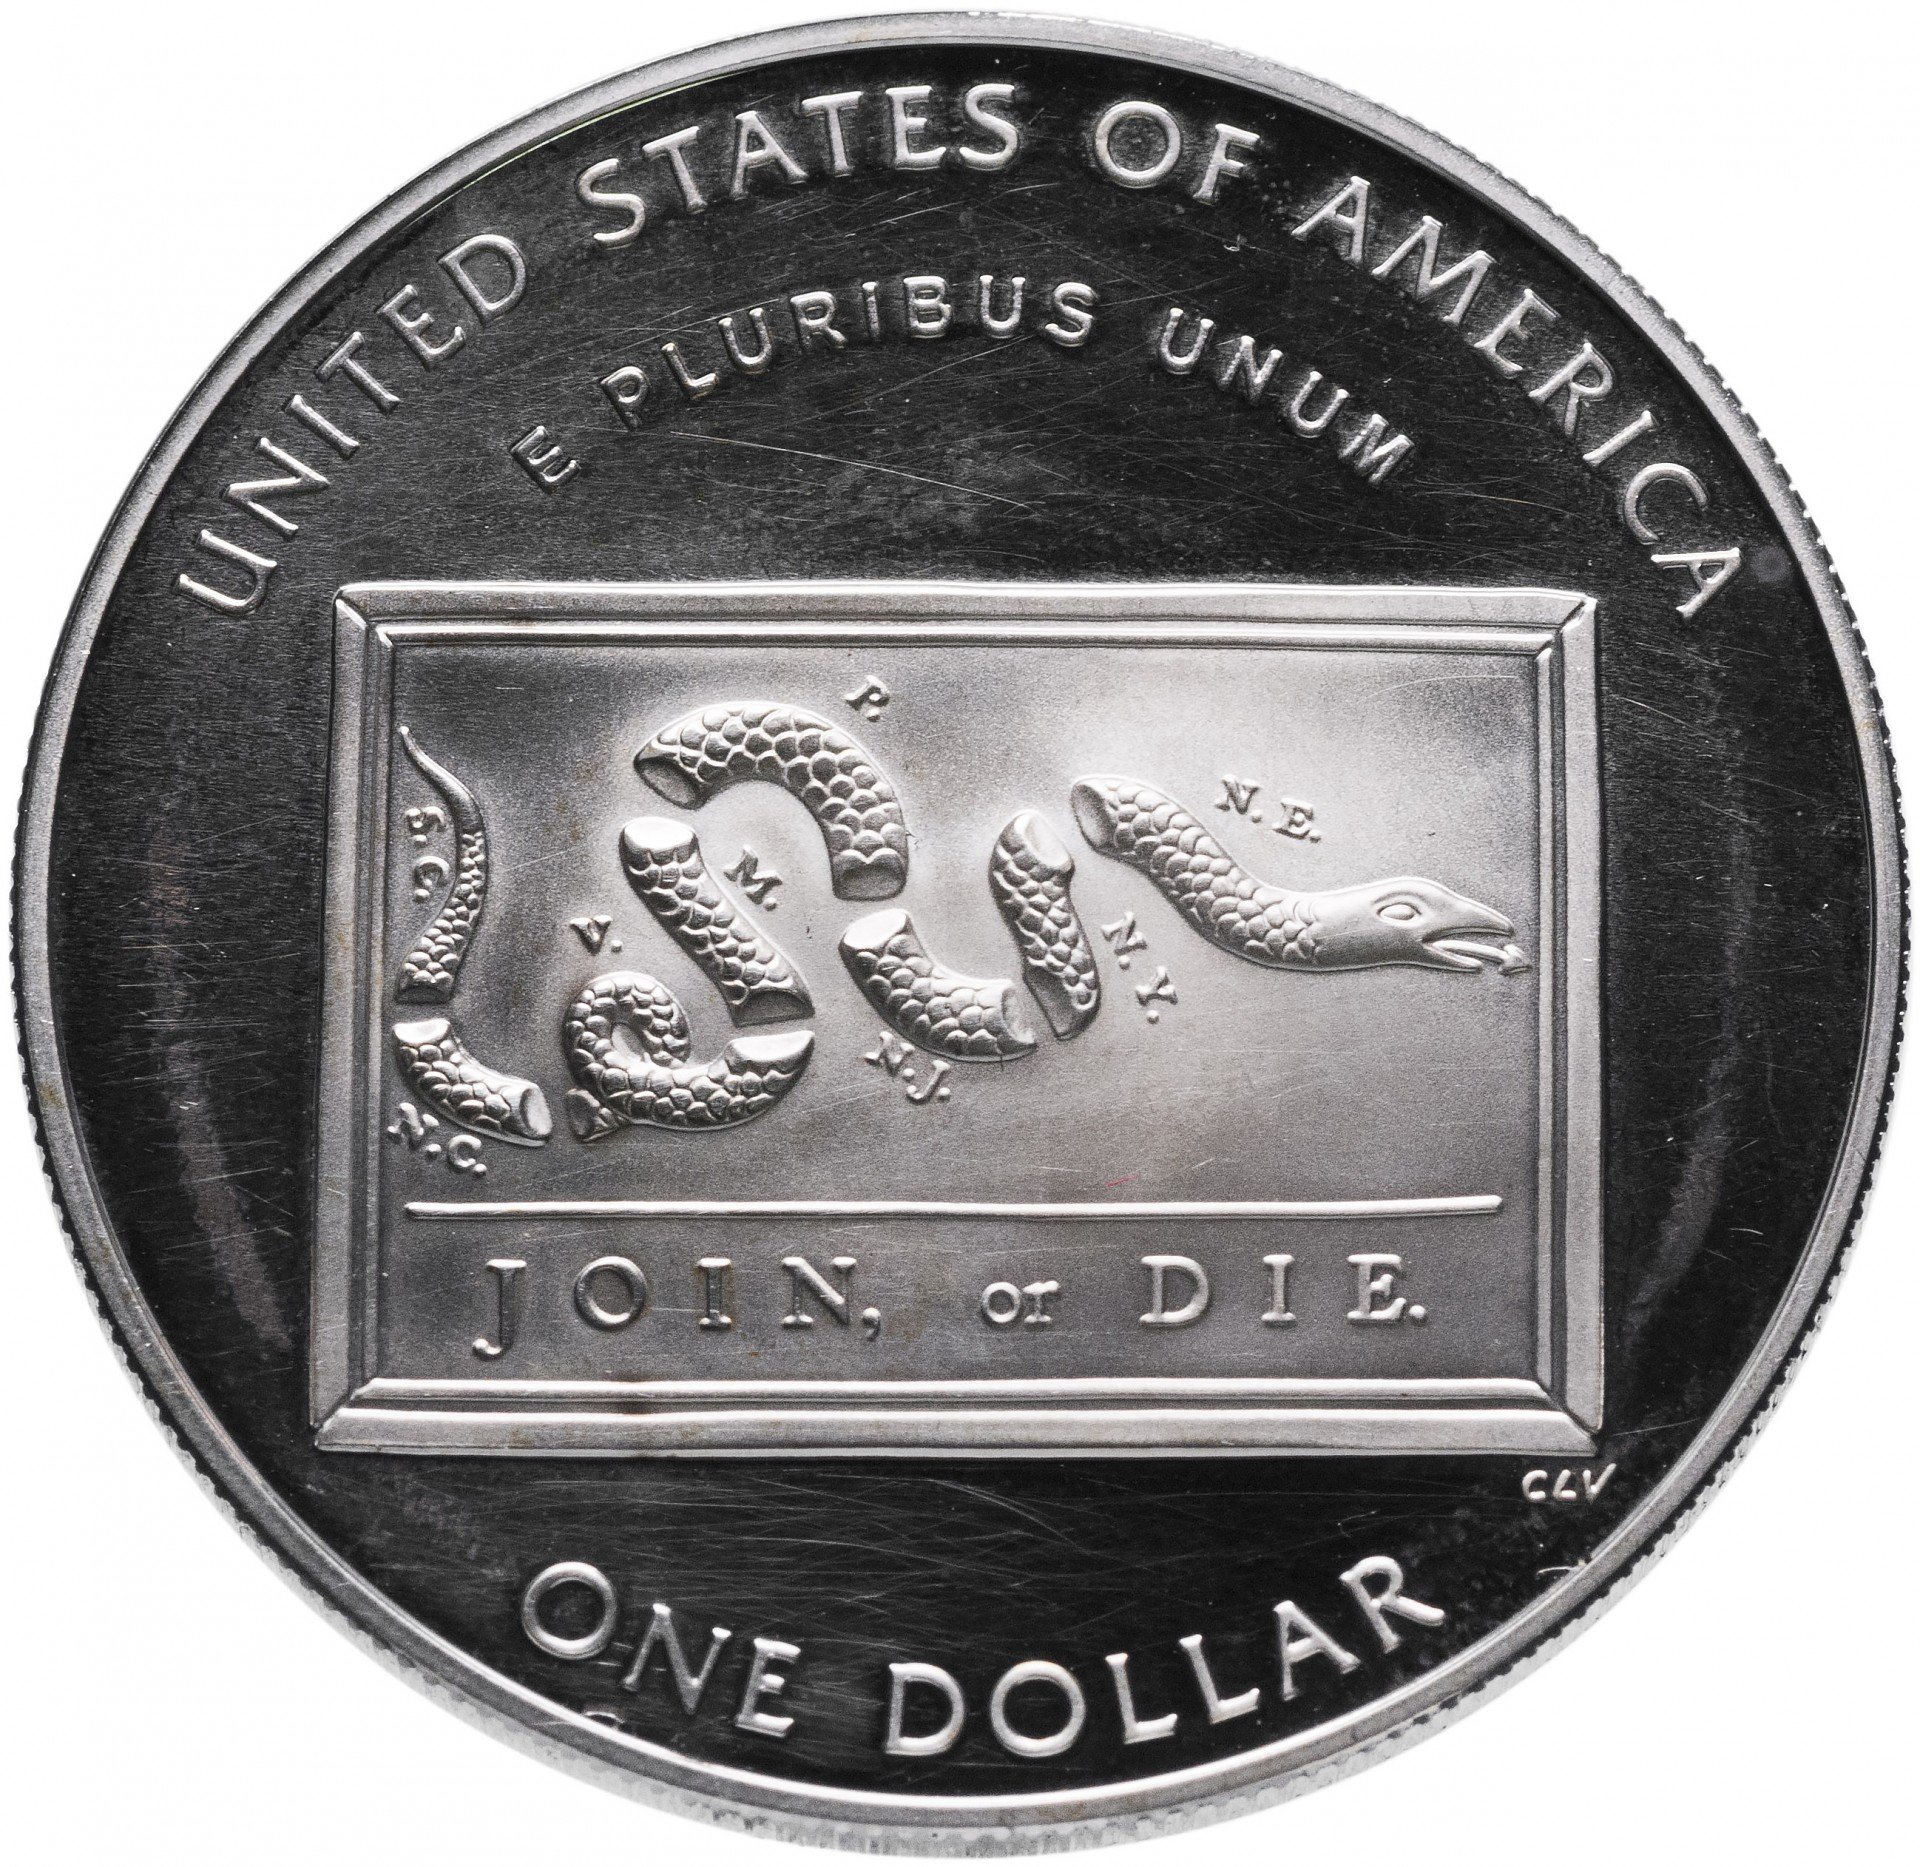 Доллары 2006 года. 1 Доллар 2006. Бенджамин Франклин монета. Доллар 2006. Монета США 1 доллар 2006 300-летний юбилей Бенджамина Франклина.